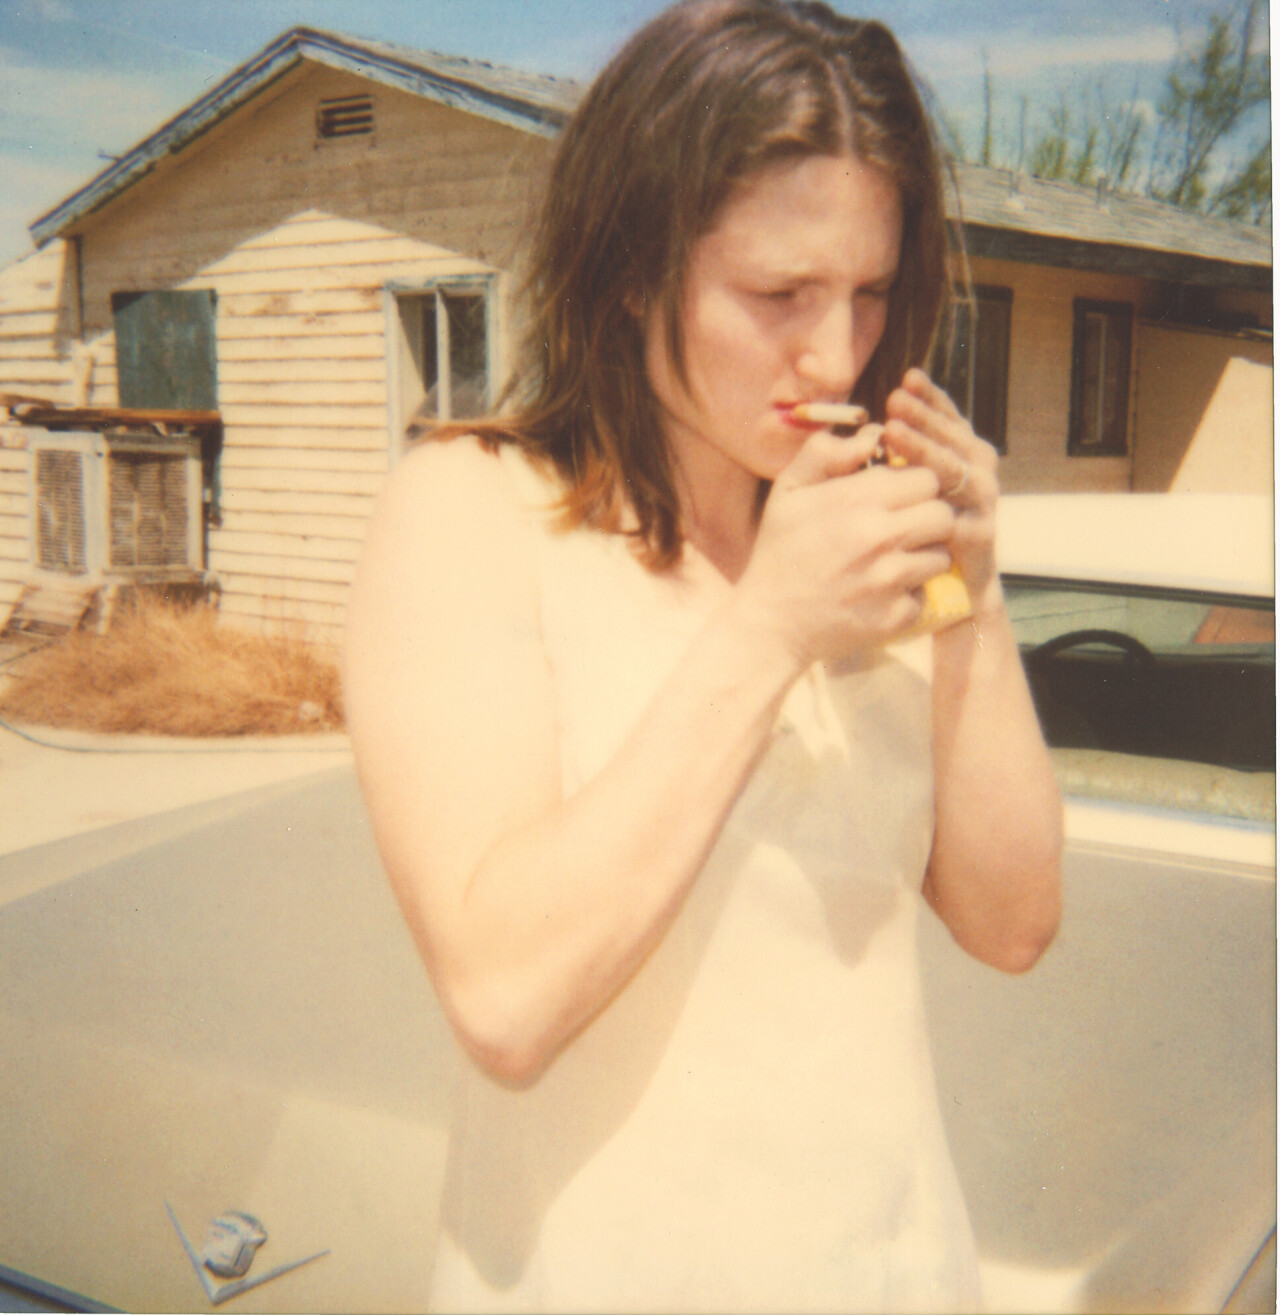 Кирстен закуривает сигарету, 2 Mile Road (29 Palms, Калифорния), 1999 г., полароид. Фотограф Стефани Шнайдер